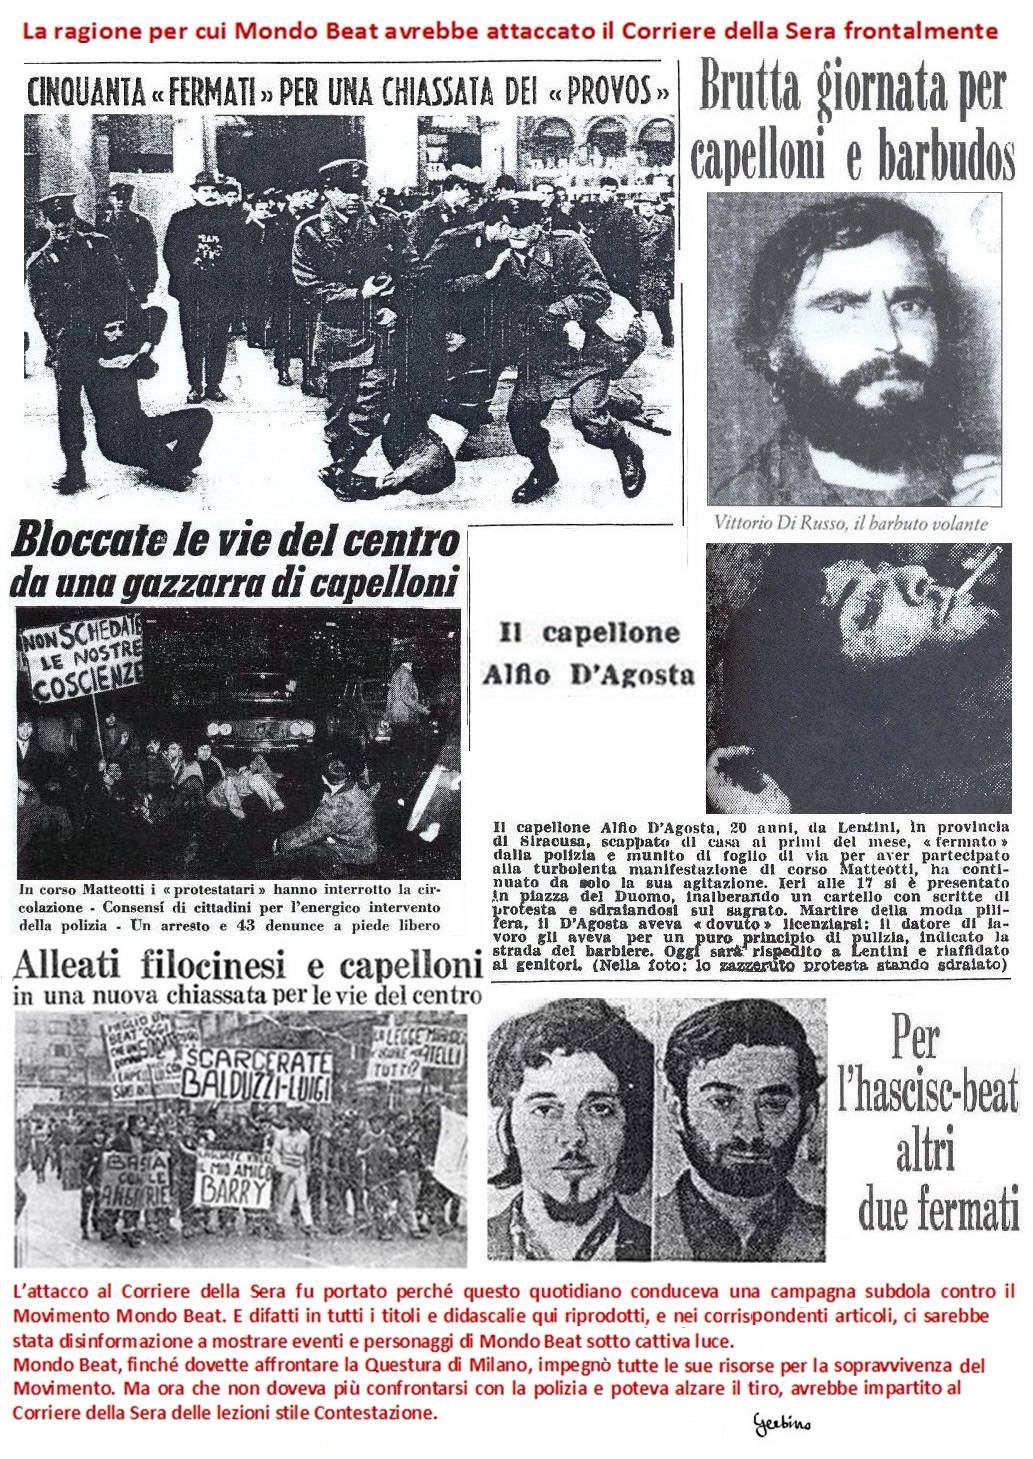 L'attacco al Corriere della Sera fu portato perché questo quotidiano conduceva una campagna subdola contro il Movimento Mondo Beat